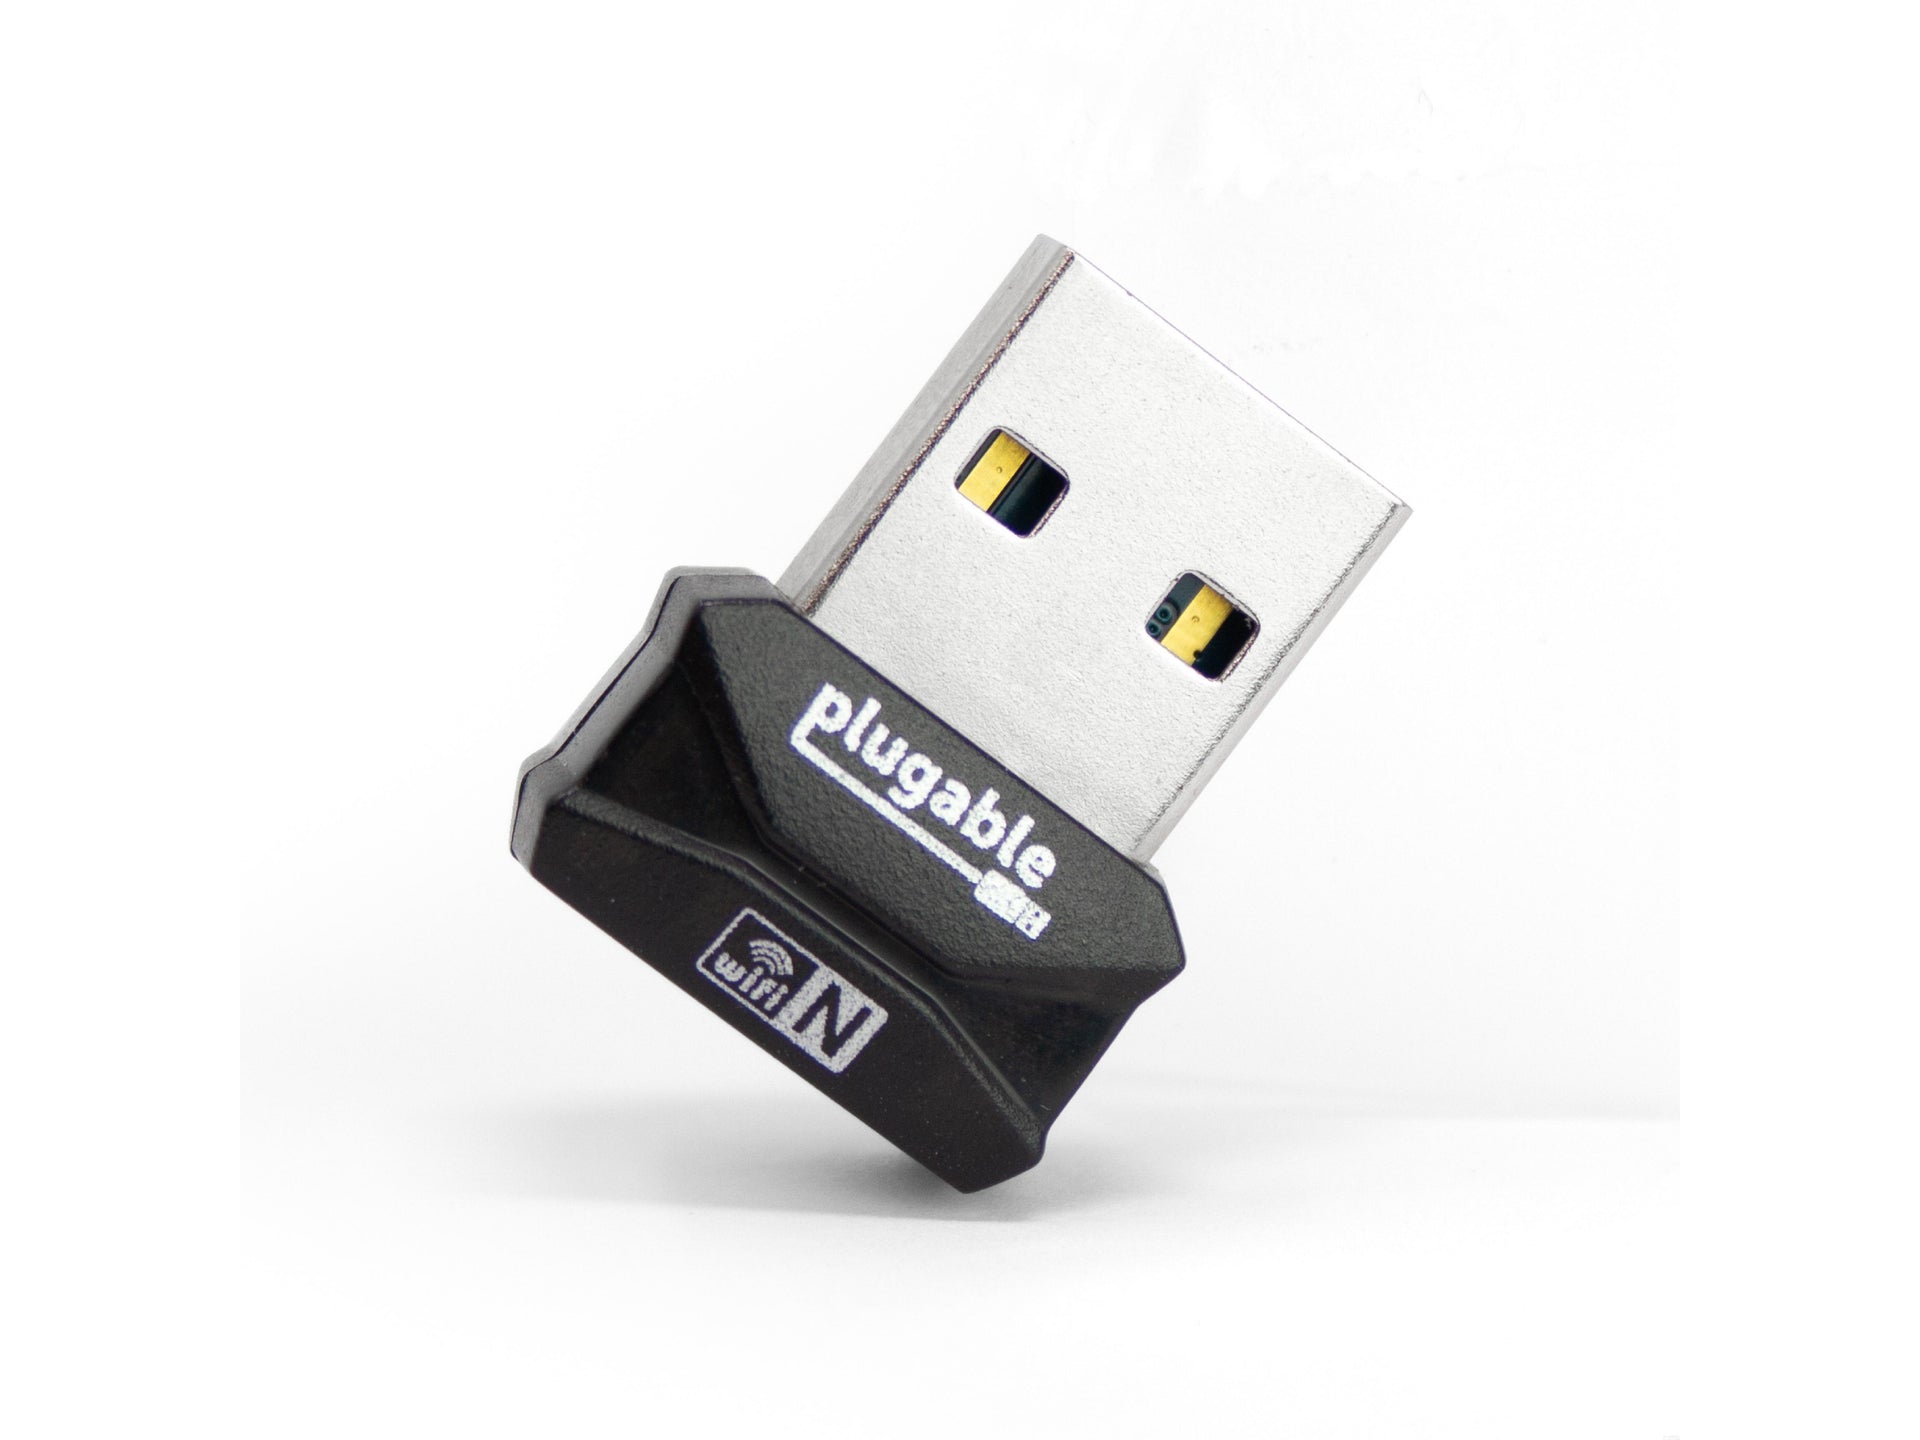 CLE WIFI 802.11N USB 2.0